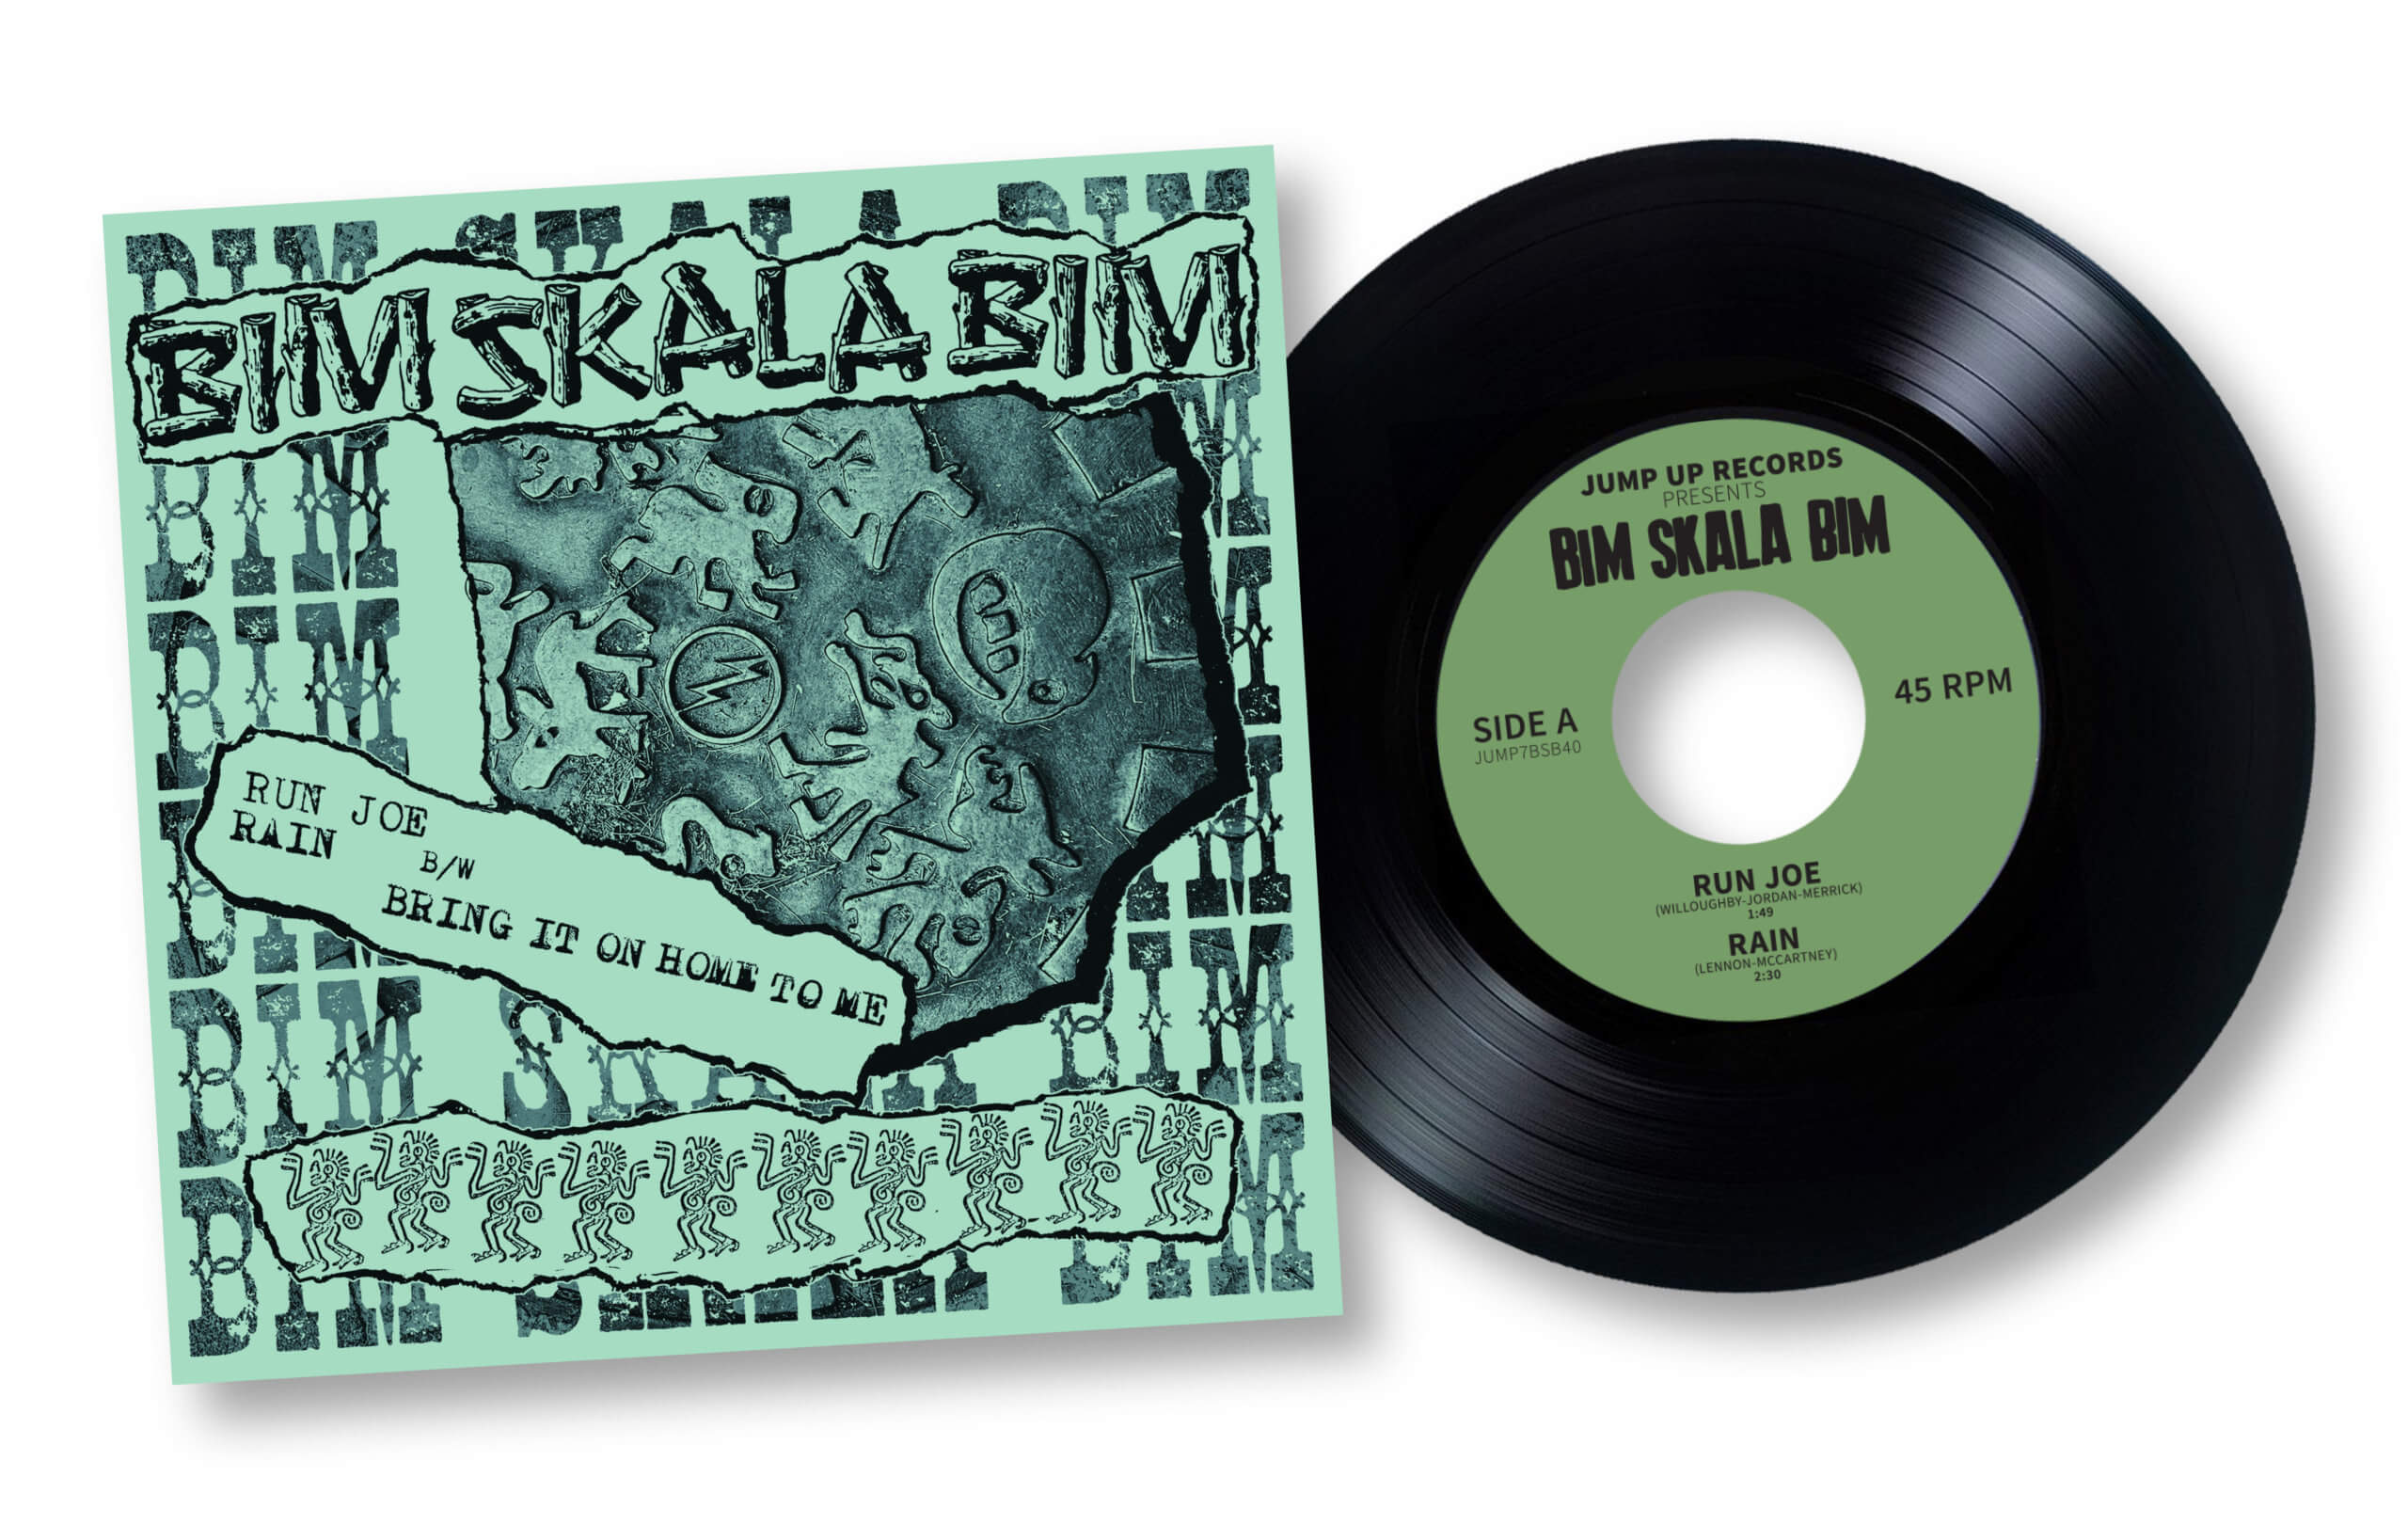 Bim Skala Bim/40TH ANNIVERSARY EP 7"